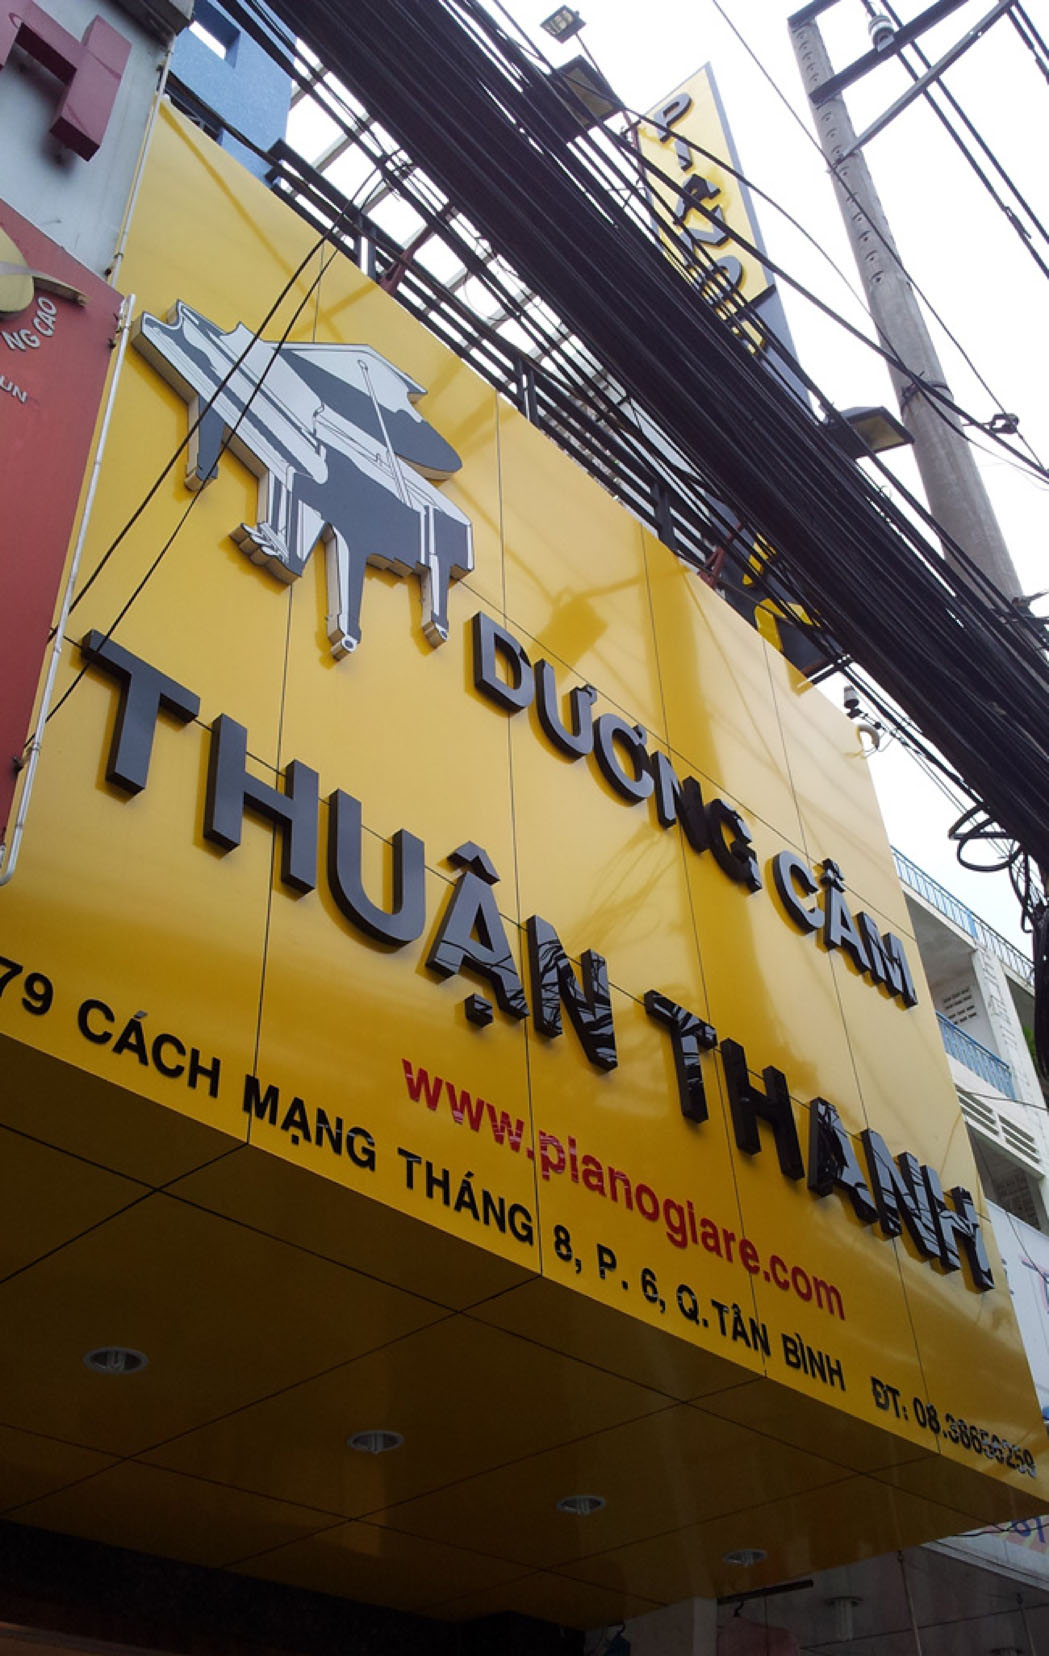 Hãy khám phá biển quảng cáo nền vàng tại TPHCM! Đó là những công trình quảng cáo đang làm cho thành phố sôi động và hấp dẫn hơn bao giờ hết. Với màu vàng chủ đạo, những biển quảng cáo này sẽ khiến bạn nhớ mãi đến TP Hồ Chí Minh.